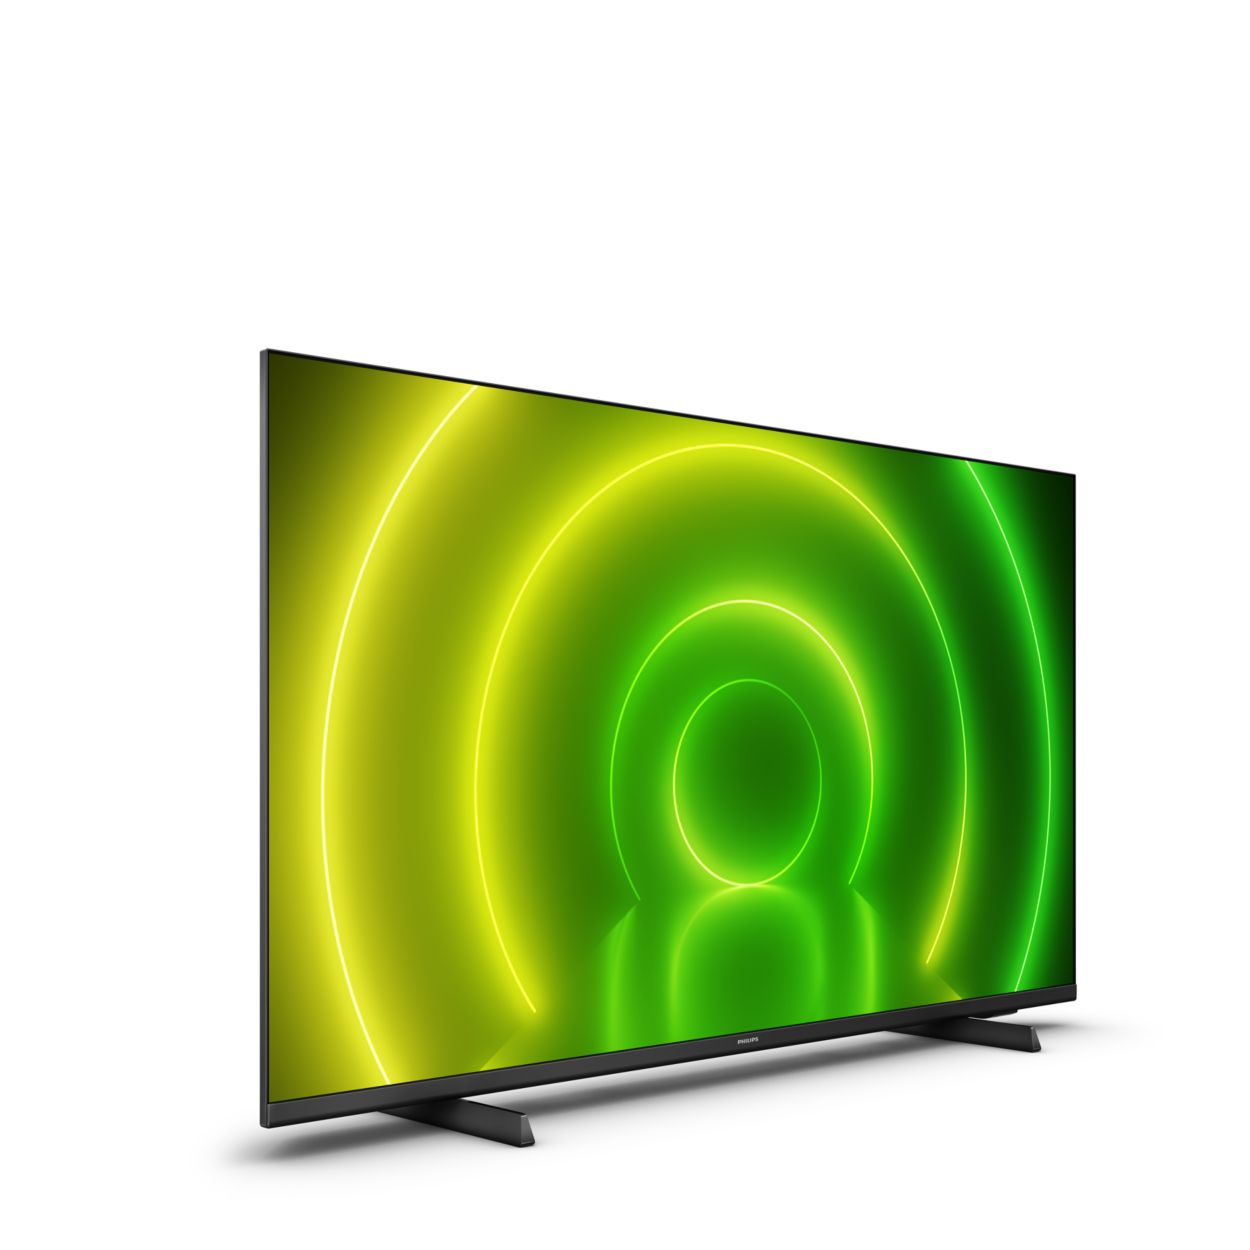 Mando a Distancia Original UHD 4K Smart TV Philips // Modelo TV